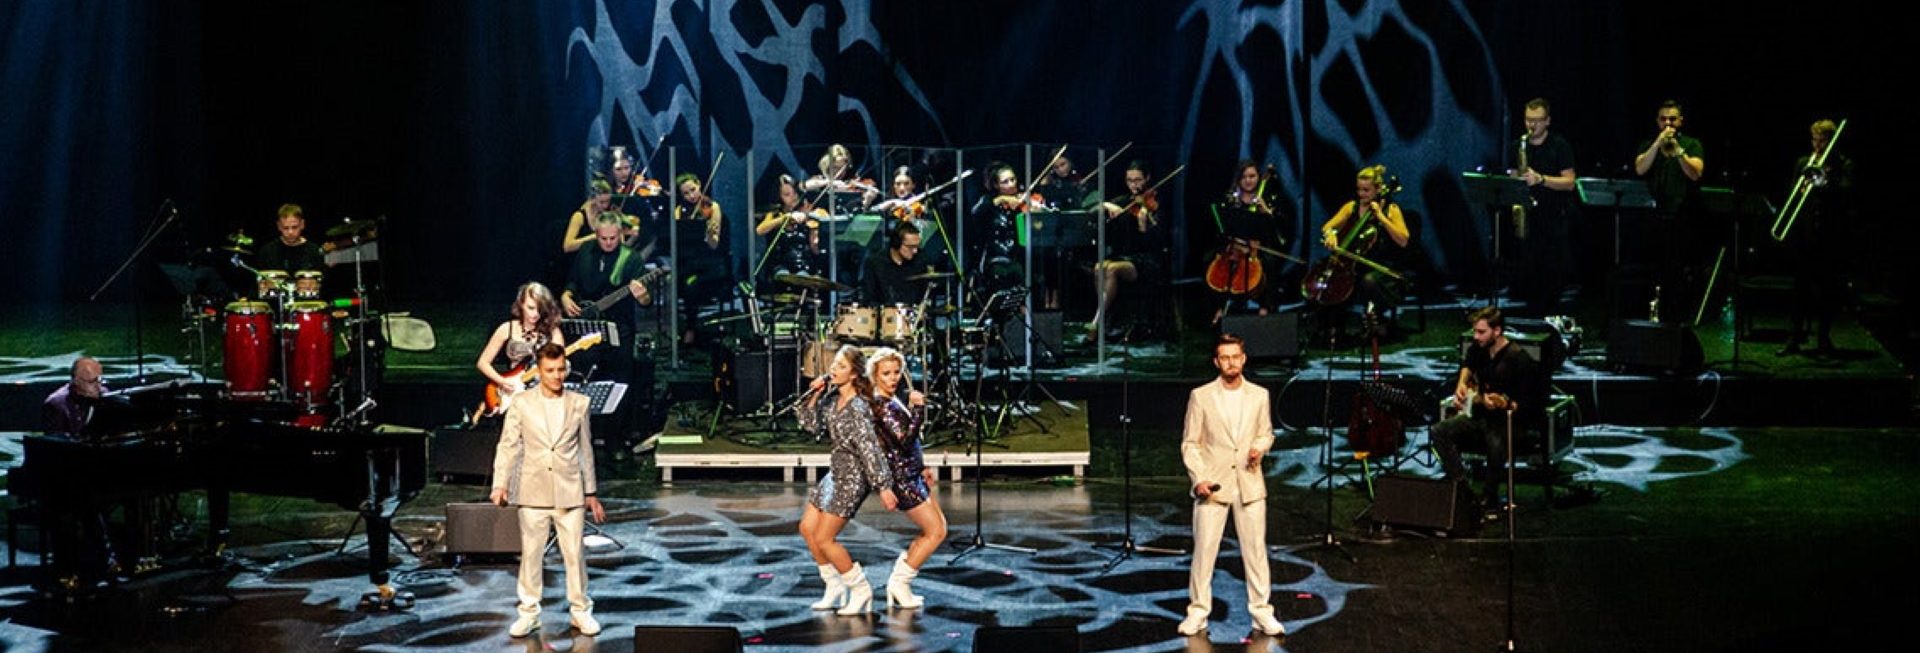 Zdjęcie z koncertu w Olsztynie „Muzyka zespołu ABBA orkiestrowo - Olsztyn 2021” organizowanego przez Filharmonię Warmińsko-Mazurską. Zdjęcie sceny muzycznej na której czterech wykonawców śpiewa piosenki zespołu ABBA na tle orkiestry.